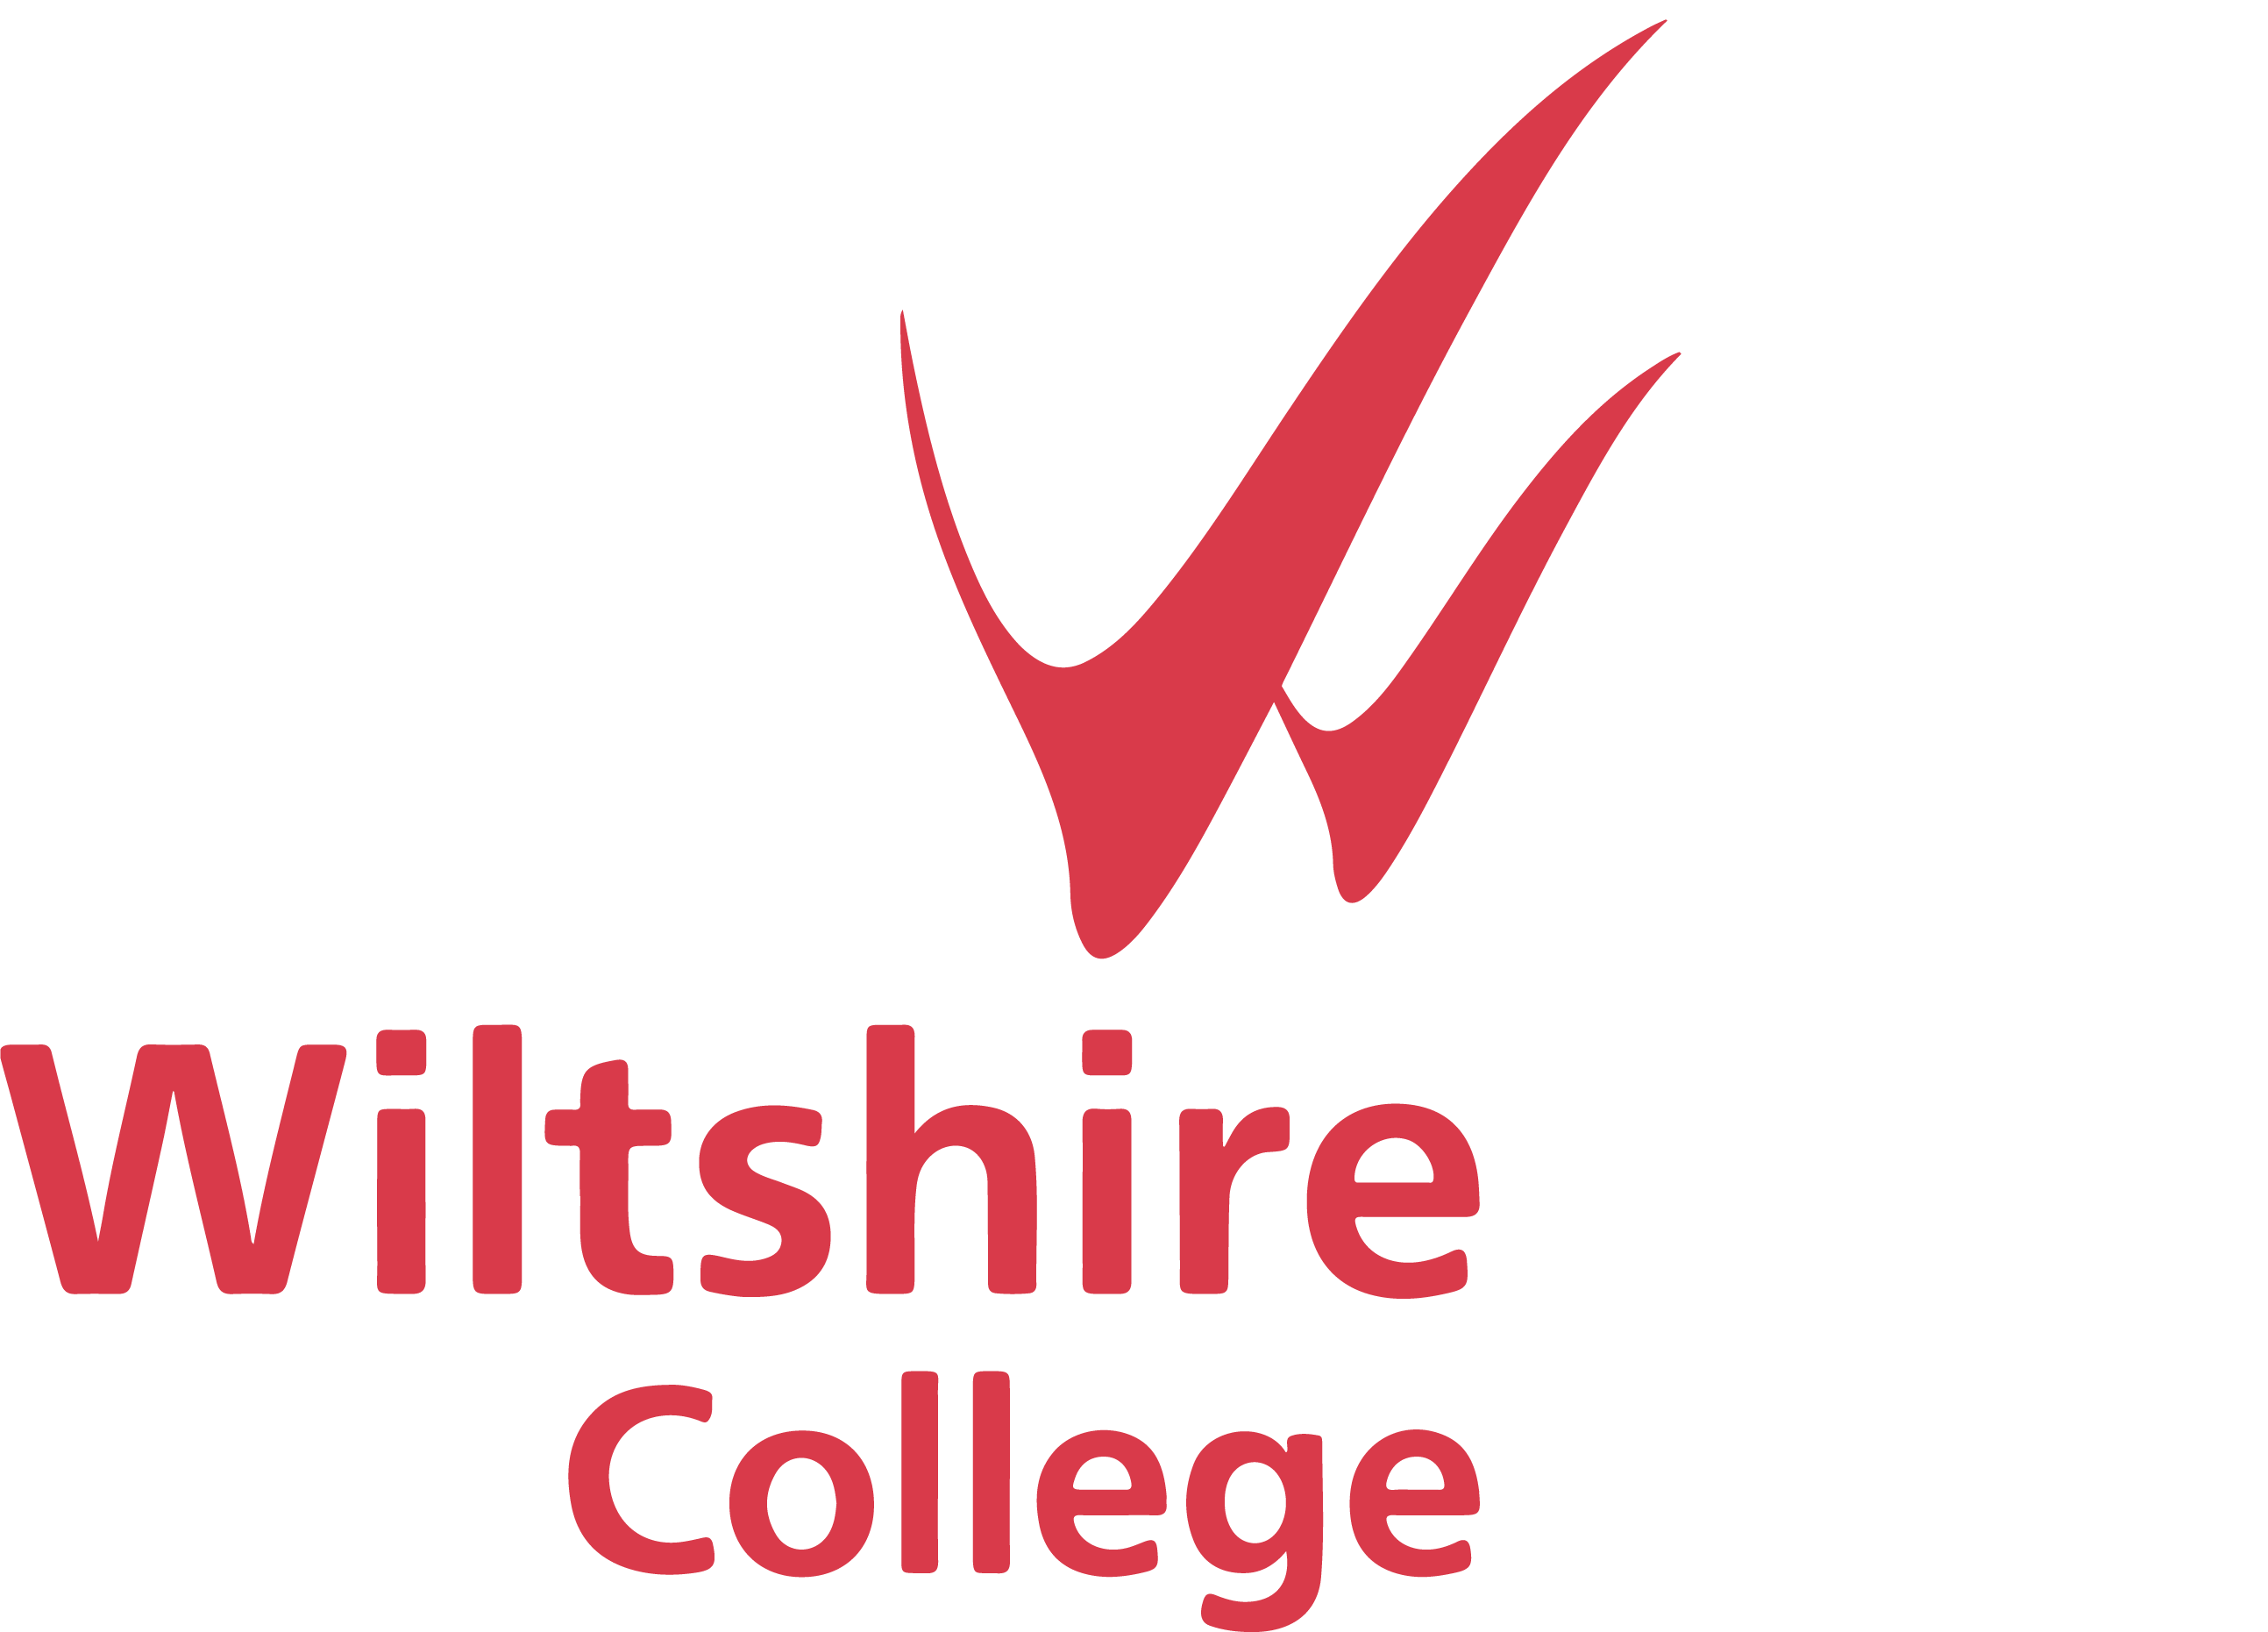 Wiltshire college logo